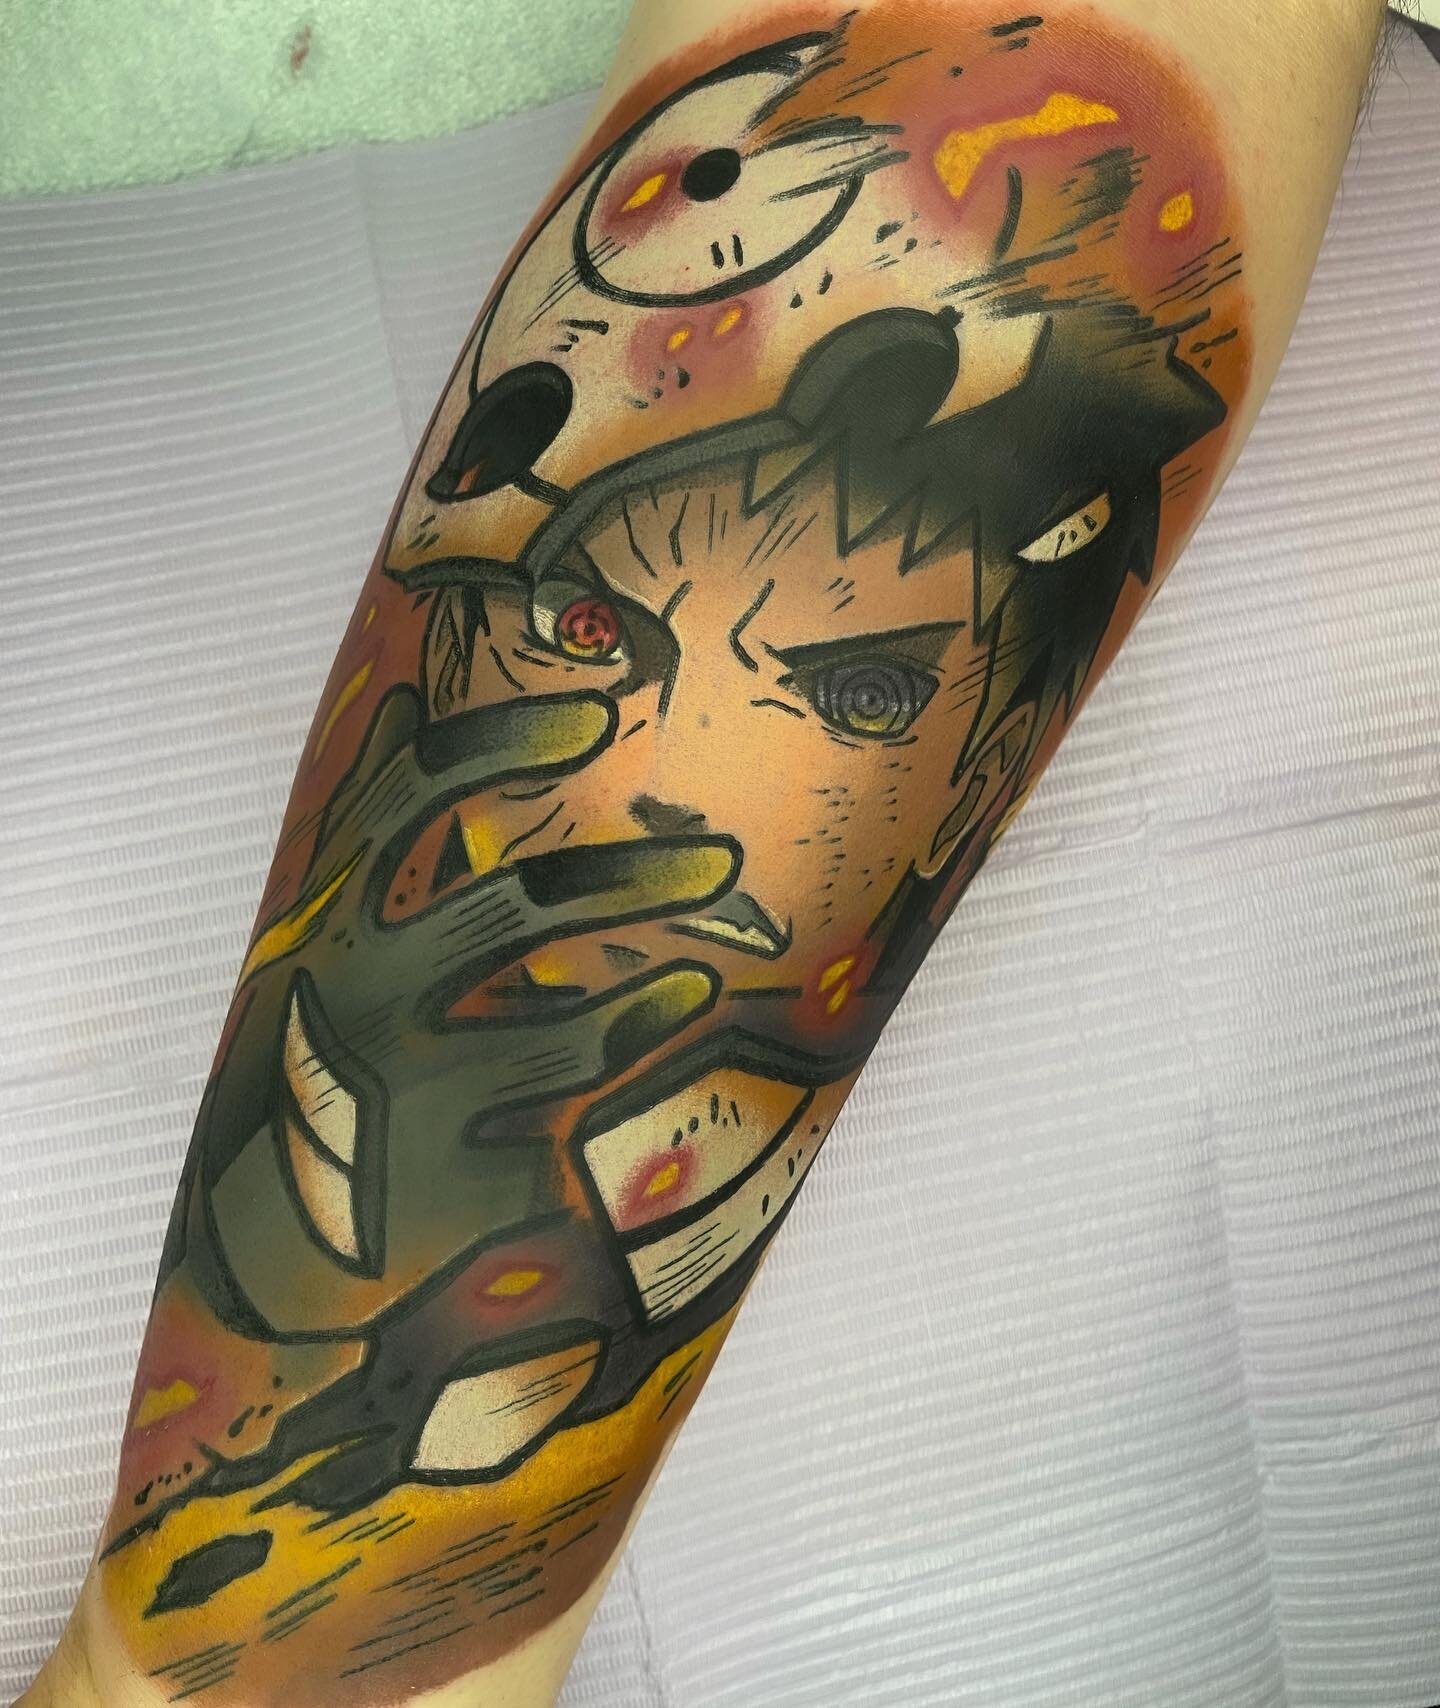 Obito! #obito #naruto #tattoo #tattoos #anime #manga #colorful #attackontitan #dragonballsuper #jujutsukaisen #ink #aot #2022 #nerd #love